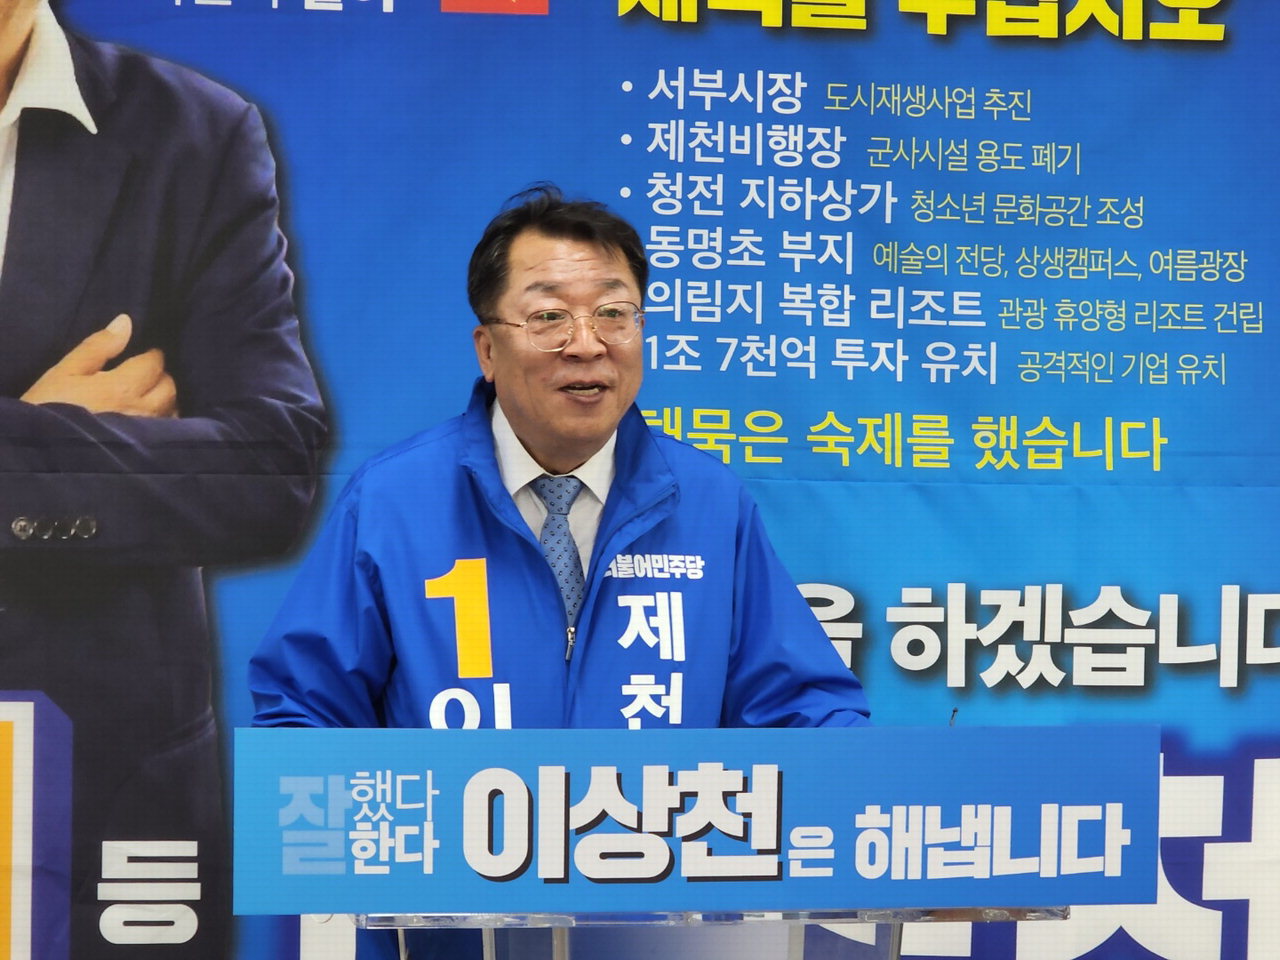 이상천 제천시장이 28일 기자회견을 열고 지역발전을 위한 3가지 핵심 공약을 발표하고 있다.